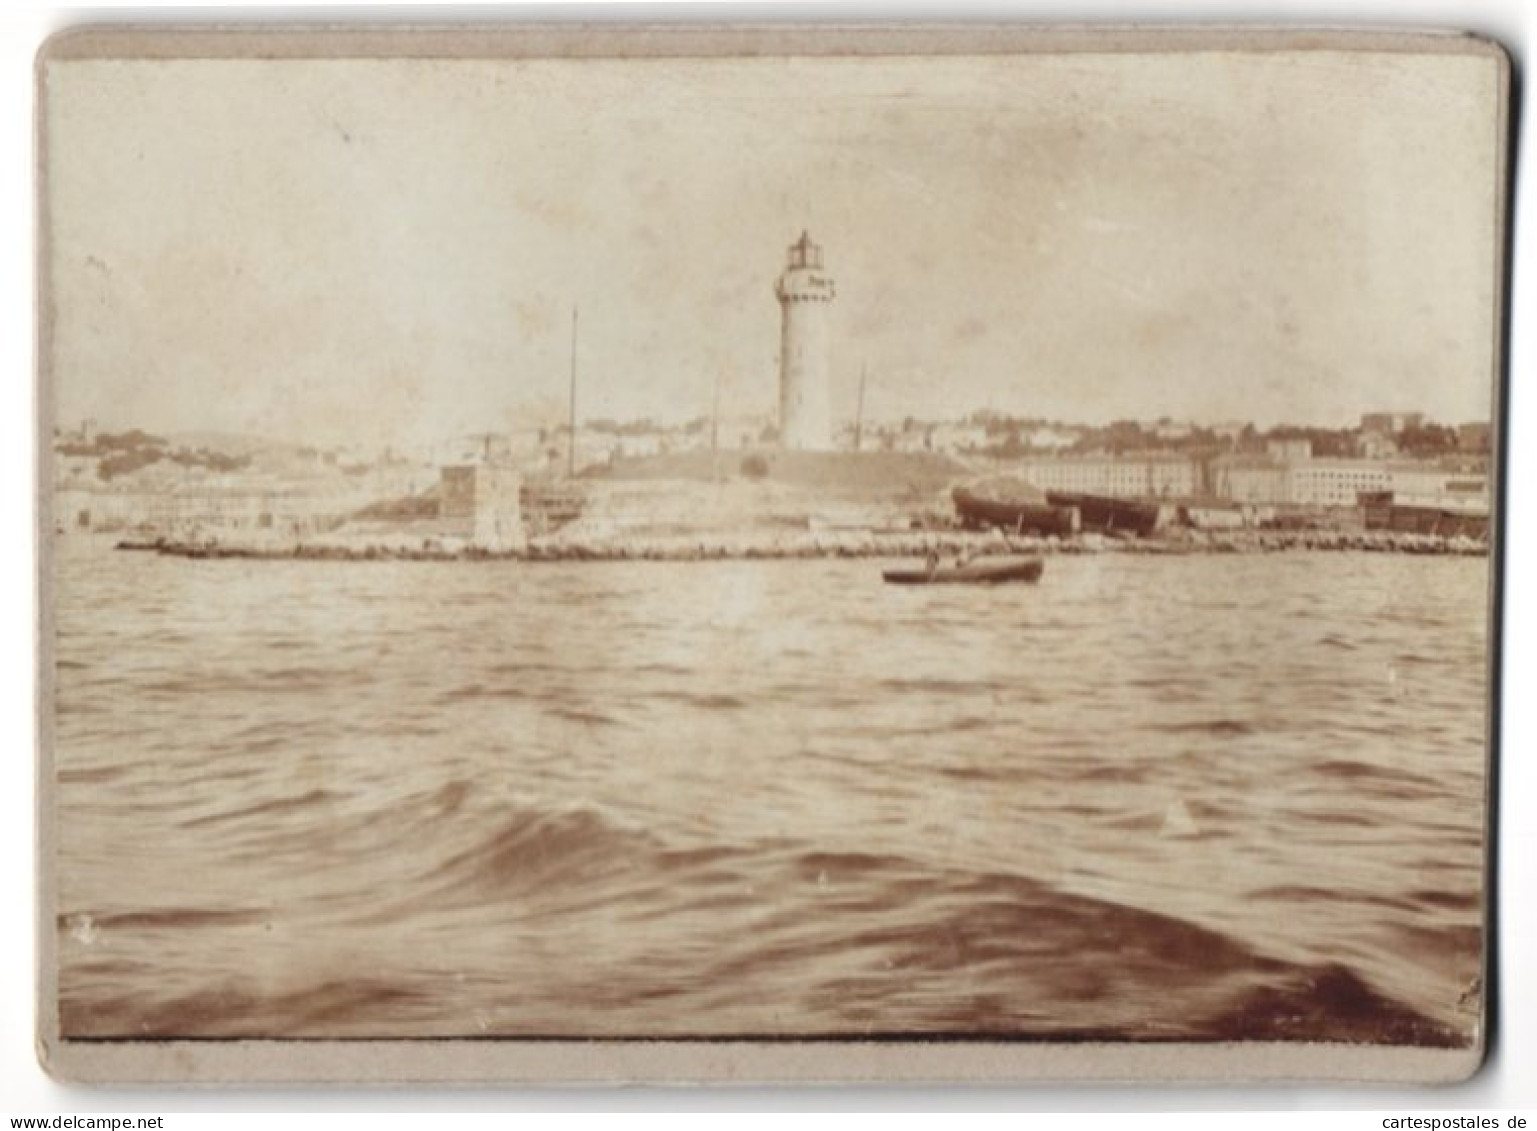 28 Foto unbekannter Fotograf, Venedig, Baron Hilmar von dem Bussche in Venedig, Gondel, Kriegsschiff, 1900 